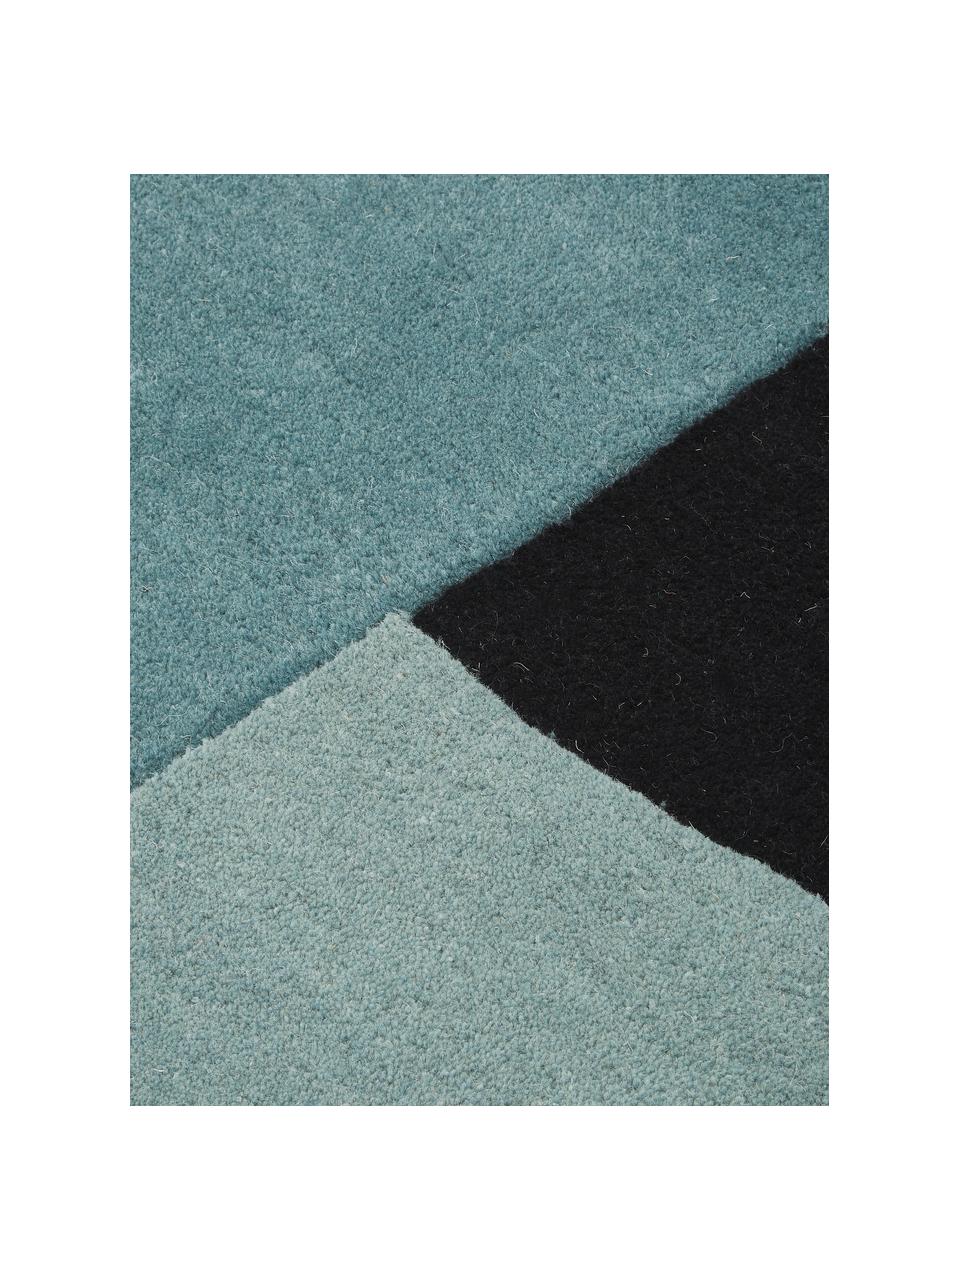 Handgetuft wollen vloerkleed Zenia in beige/blauw met abstract patroon, 100% wol, Crèmekleurig, blauw, zwart, B 170 x L 240 cm (maat M)